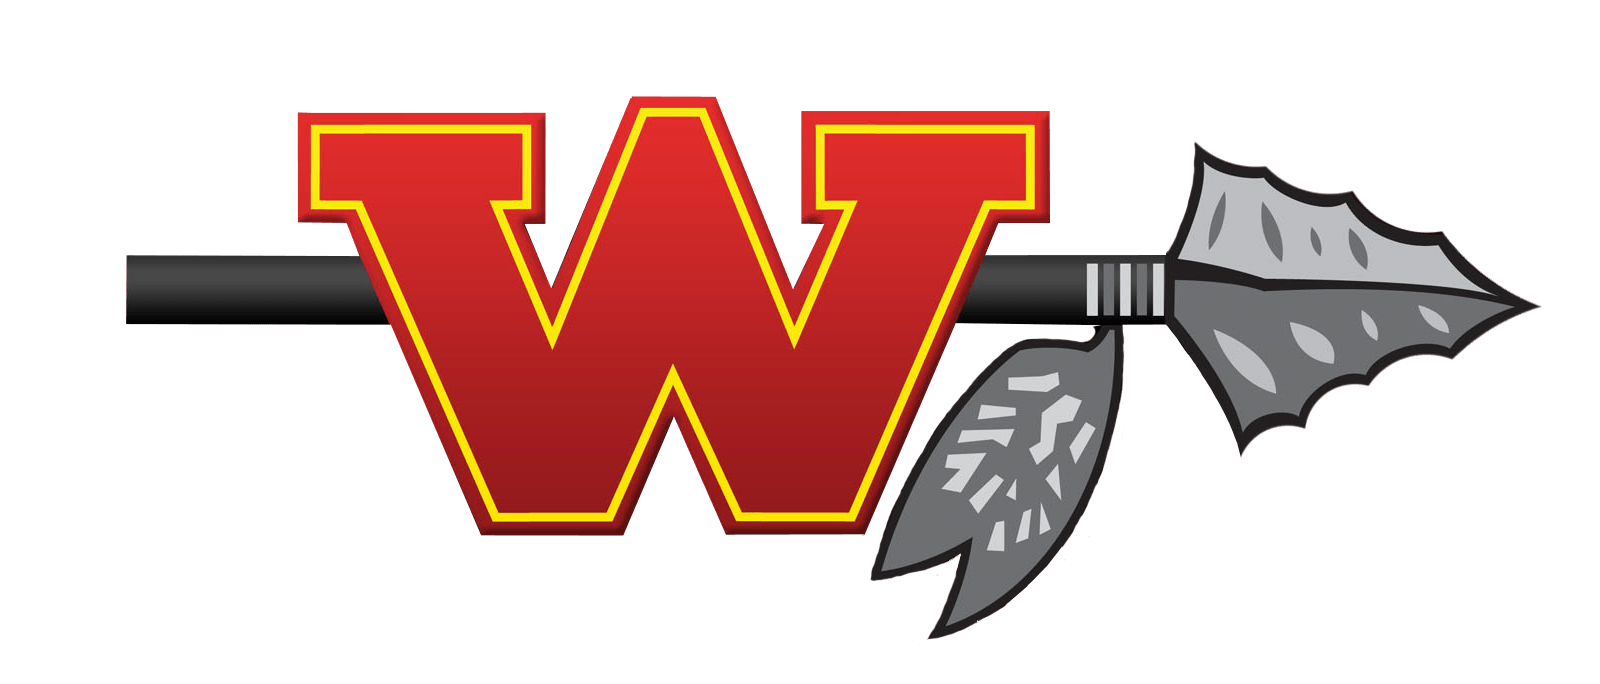 Woodbridge Logo - Woodbridge - Team Home Woodbridge Warriors Sports